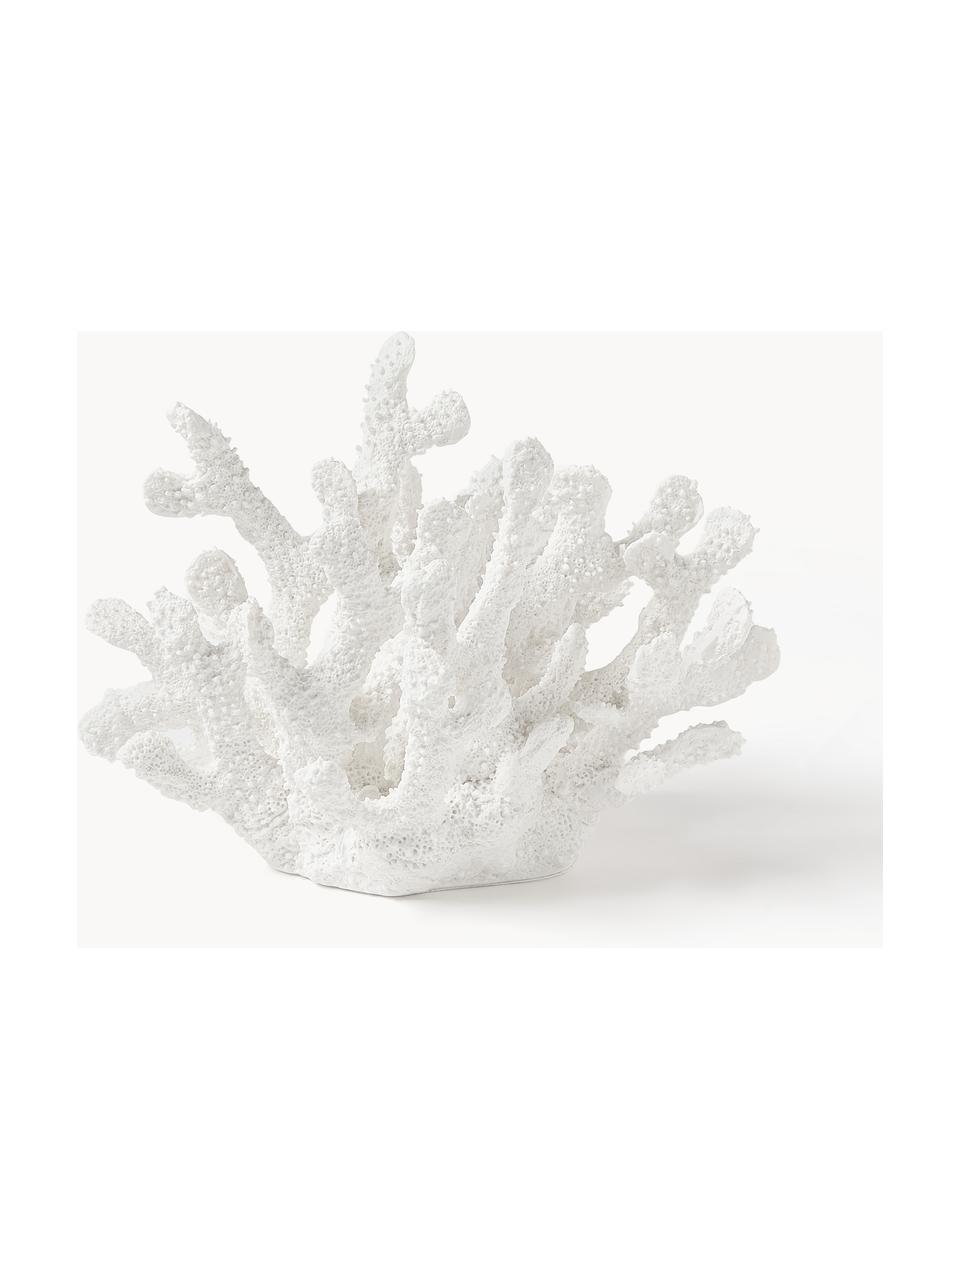 Design Deko-Objekt Coral, Polyresin, Weiß, B 22 x H 17 cm